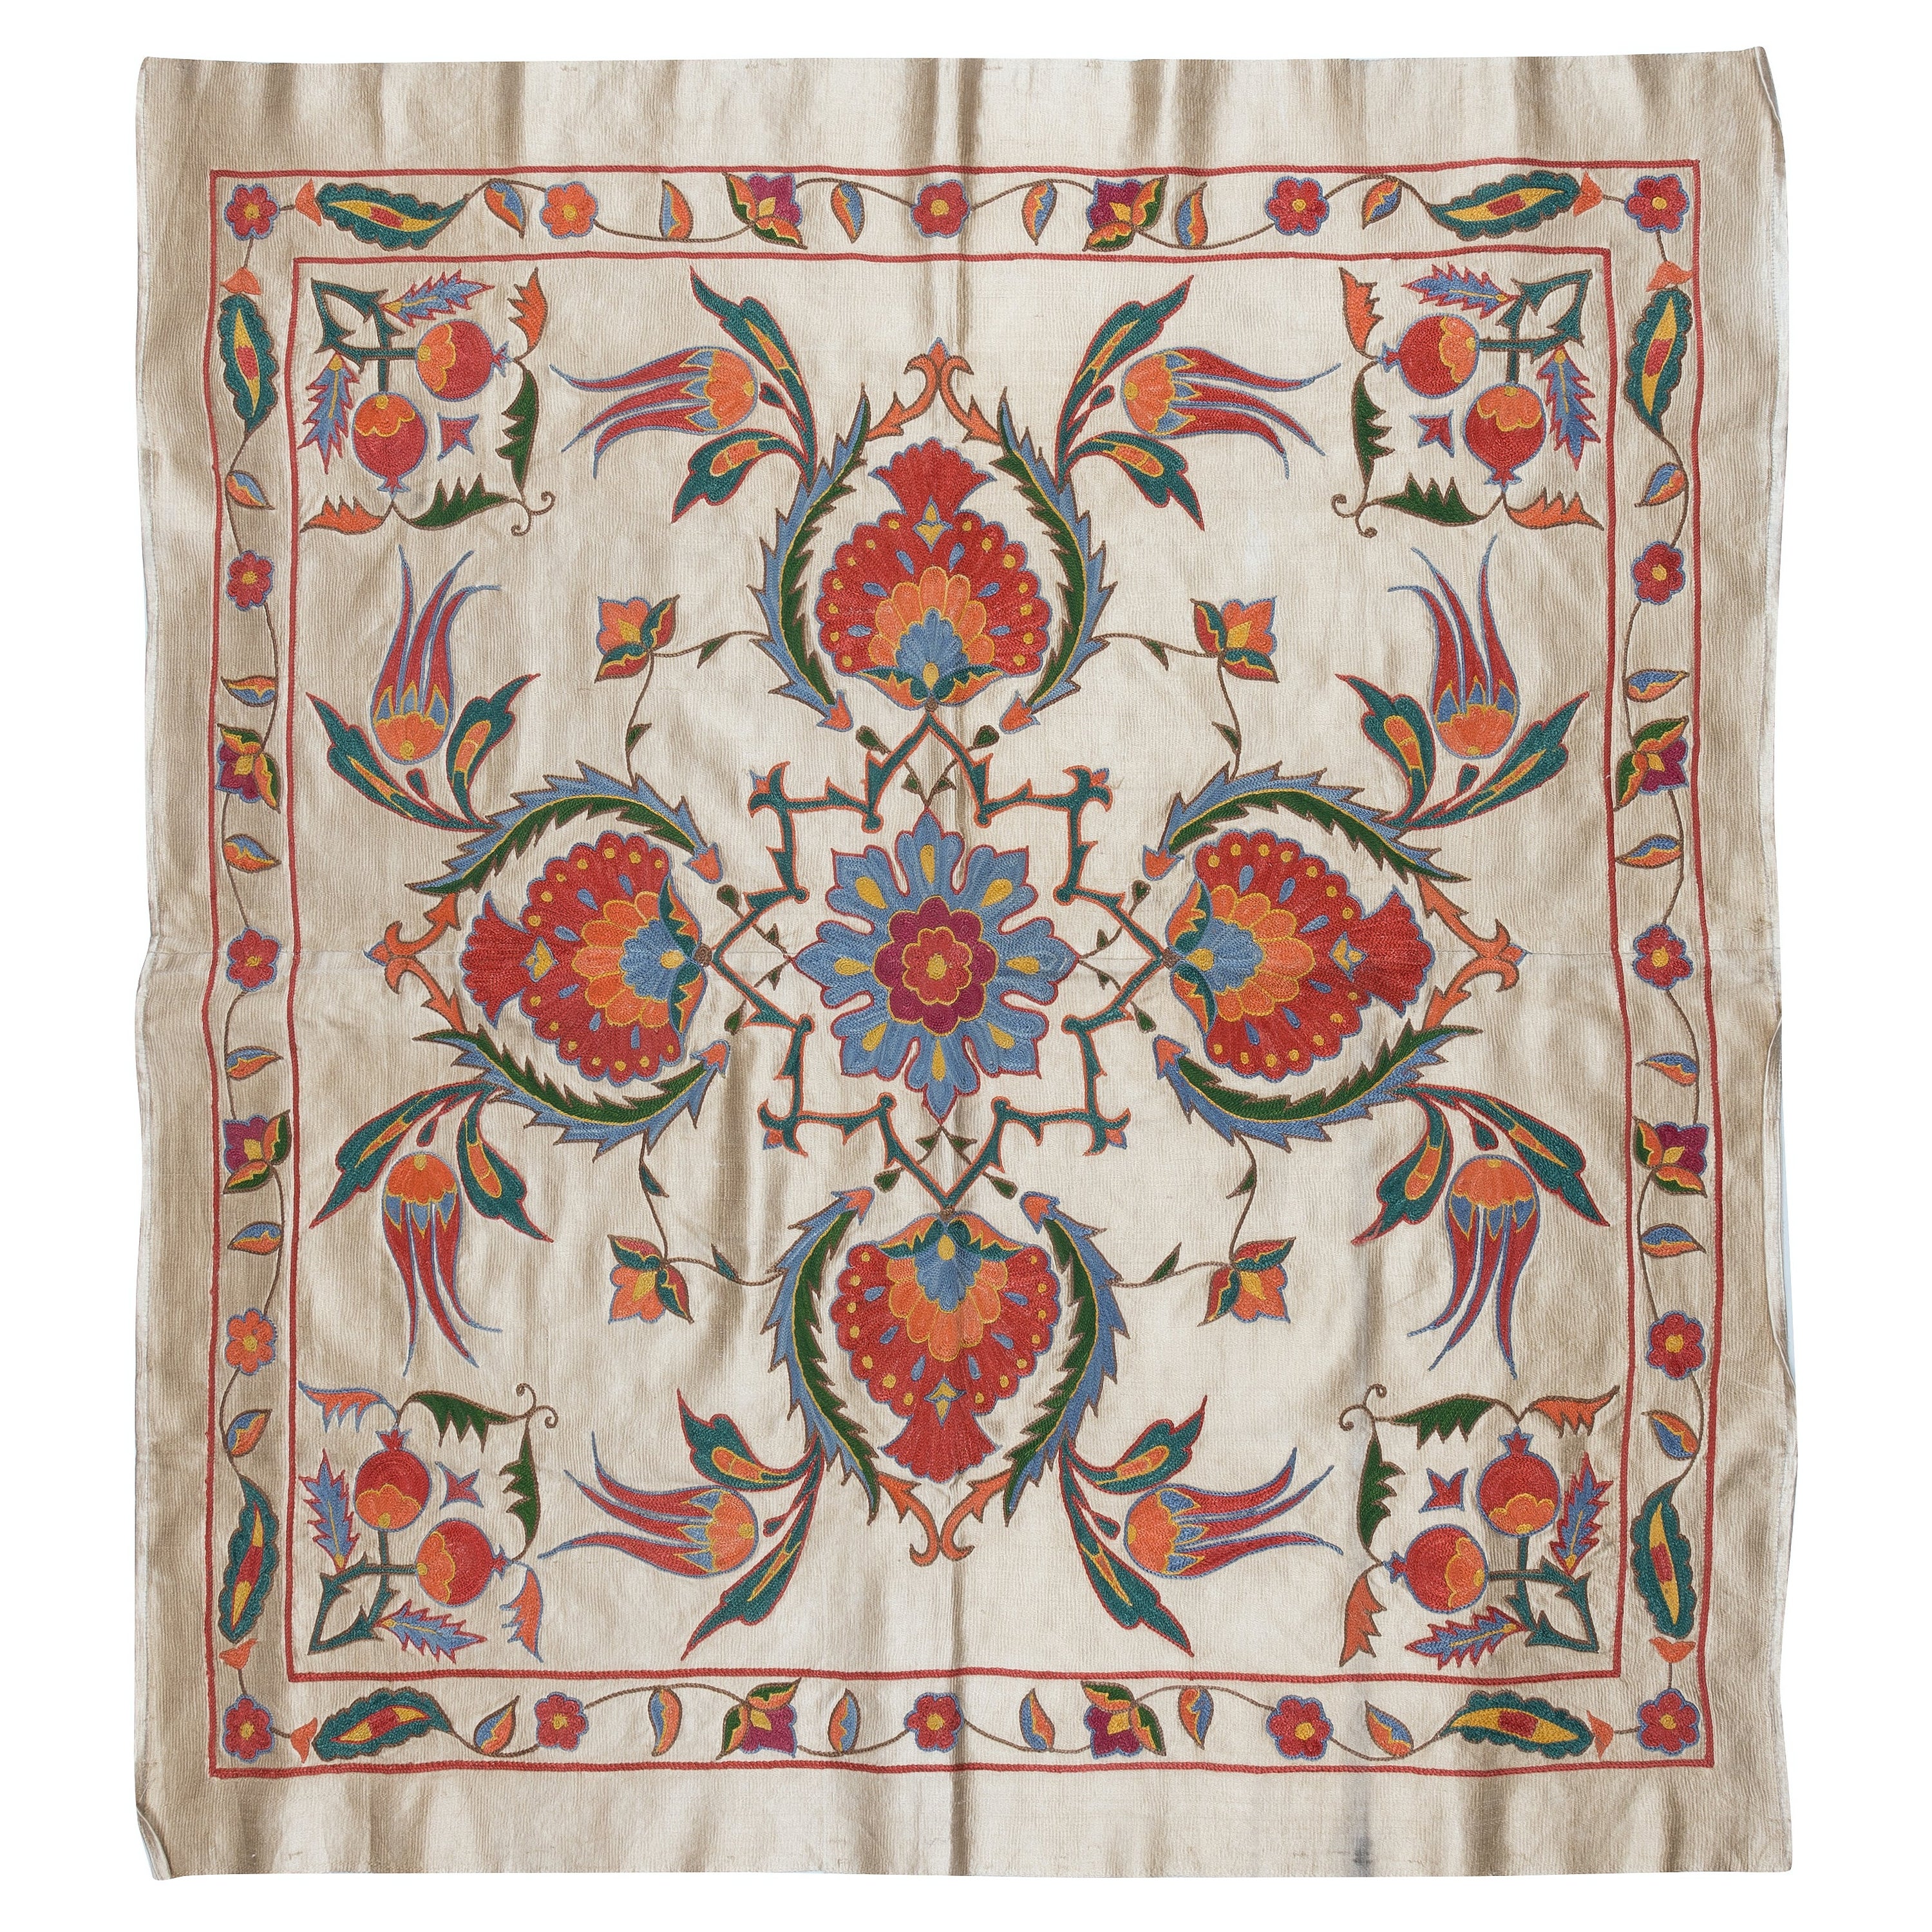 36"x39" 100% soie brodée à la main, couverture de lit ouzbeke, décoration murale en vente